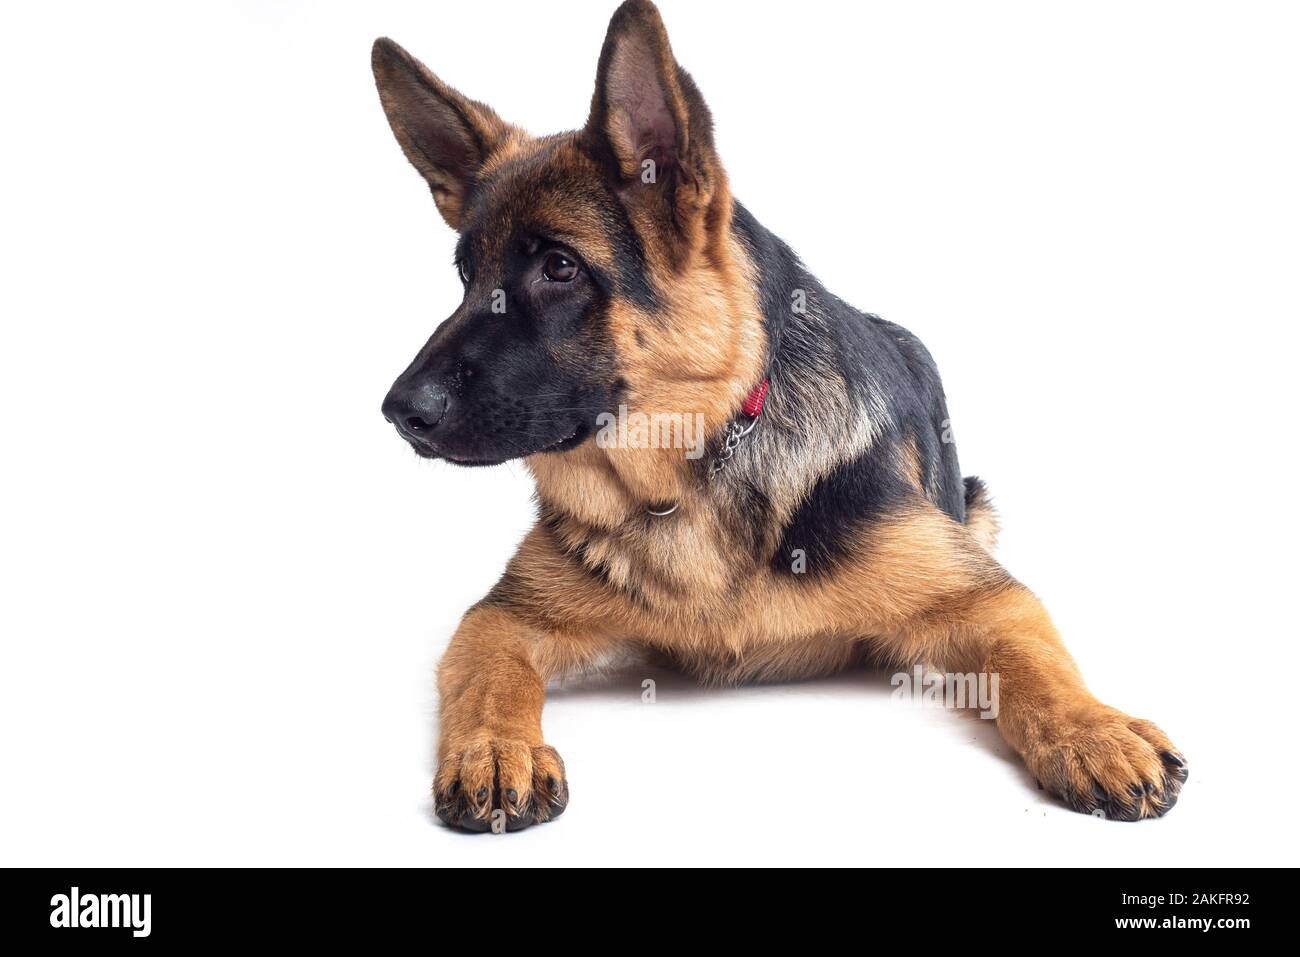 German Shepherd in studio Stock Photo